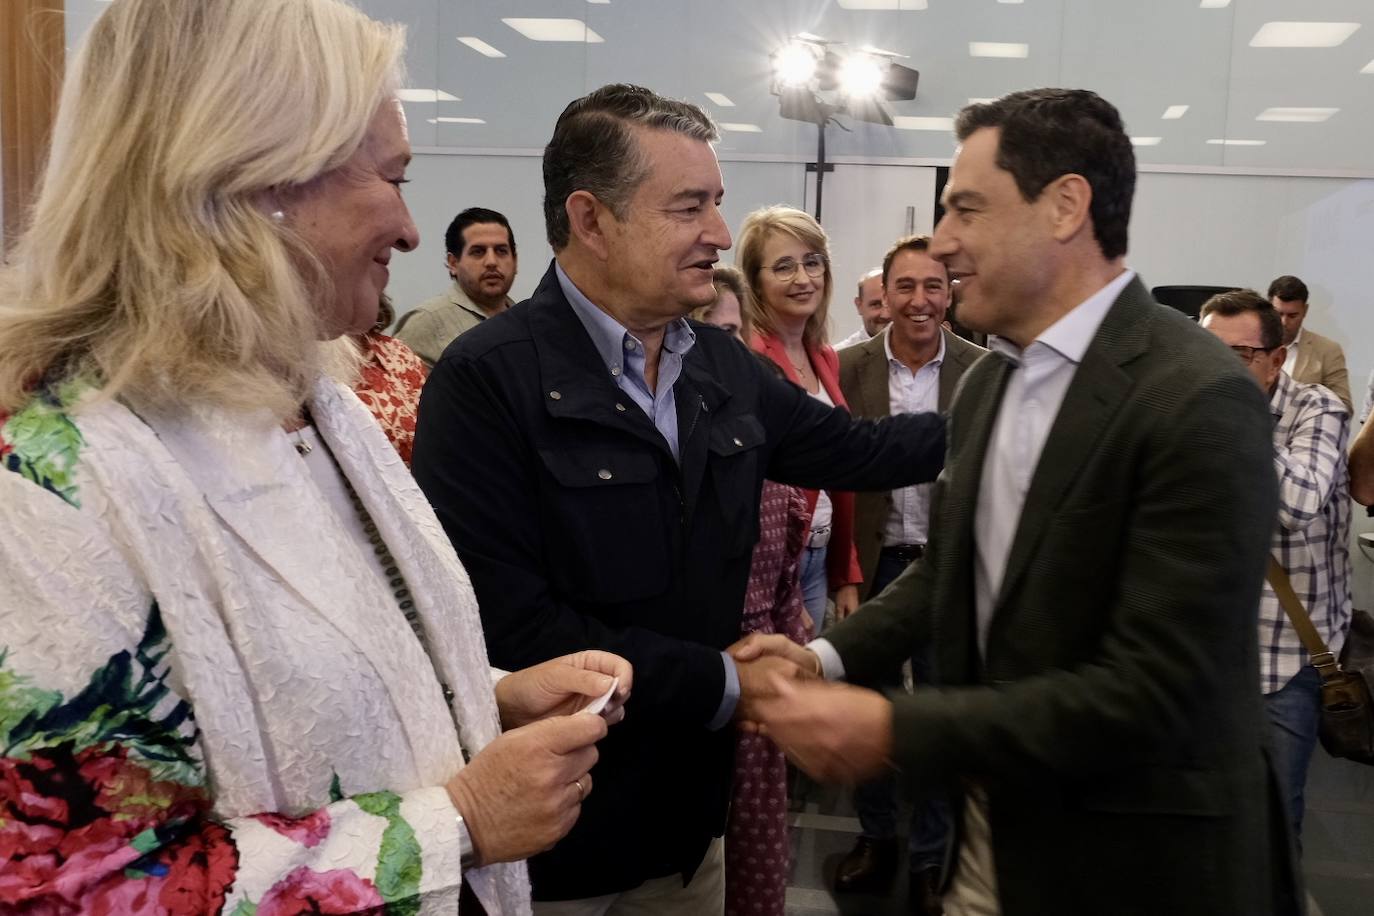 Fotos: las imágenes de la visita de Juanma Moreno a Cádiz par apoyar a Bruno